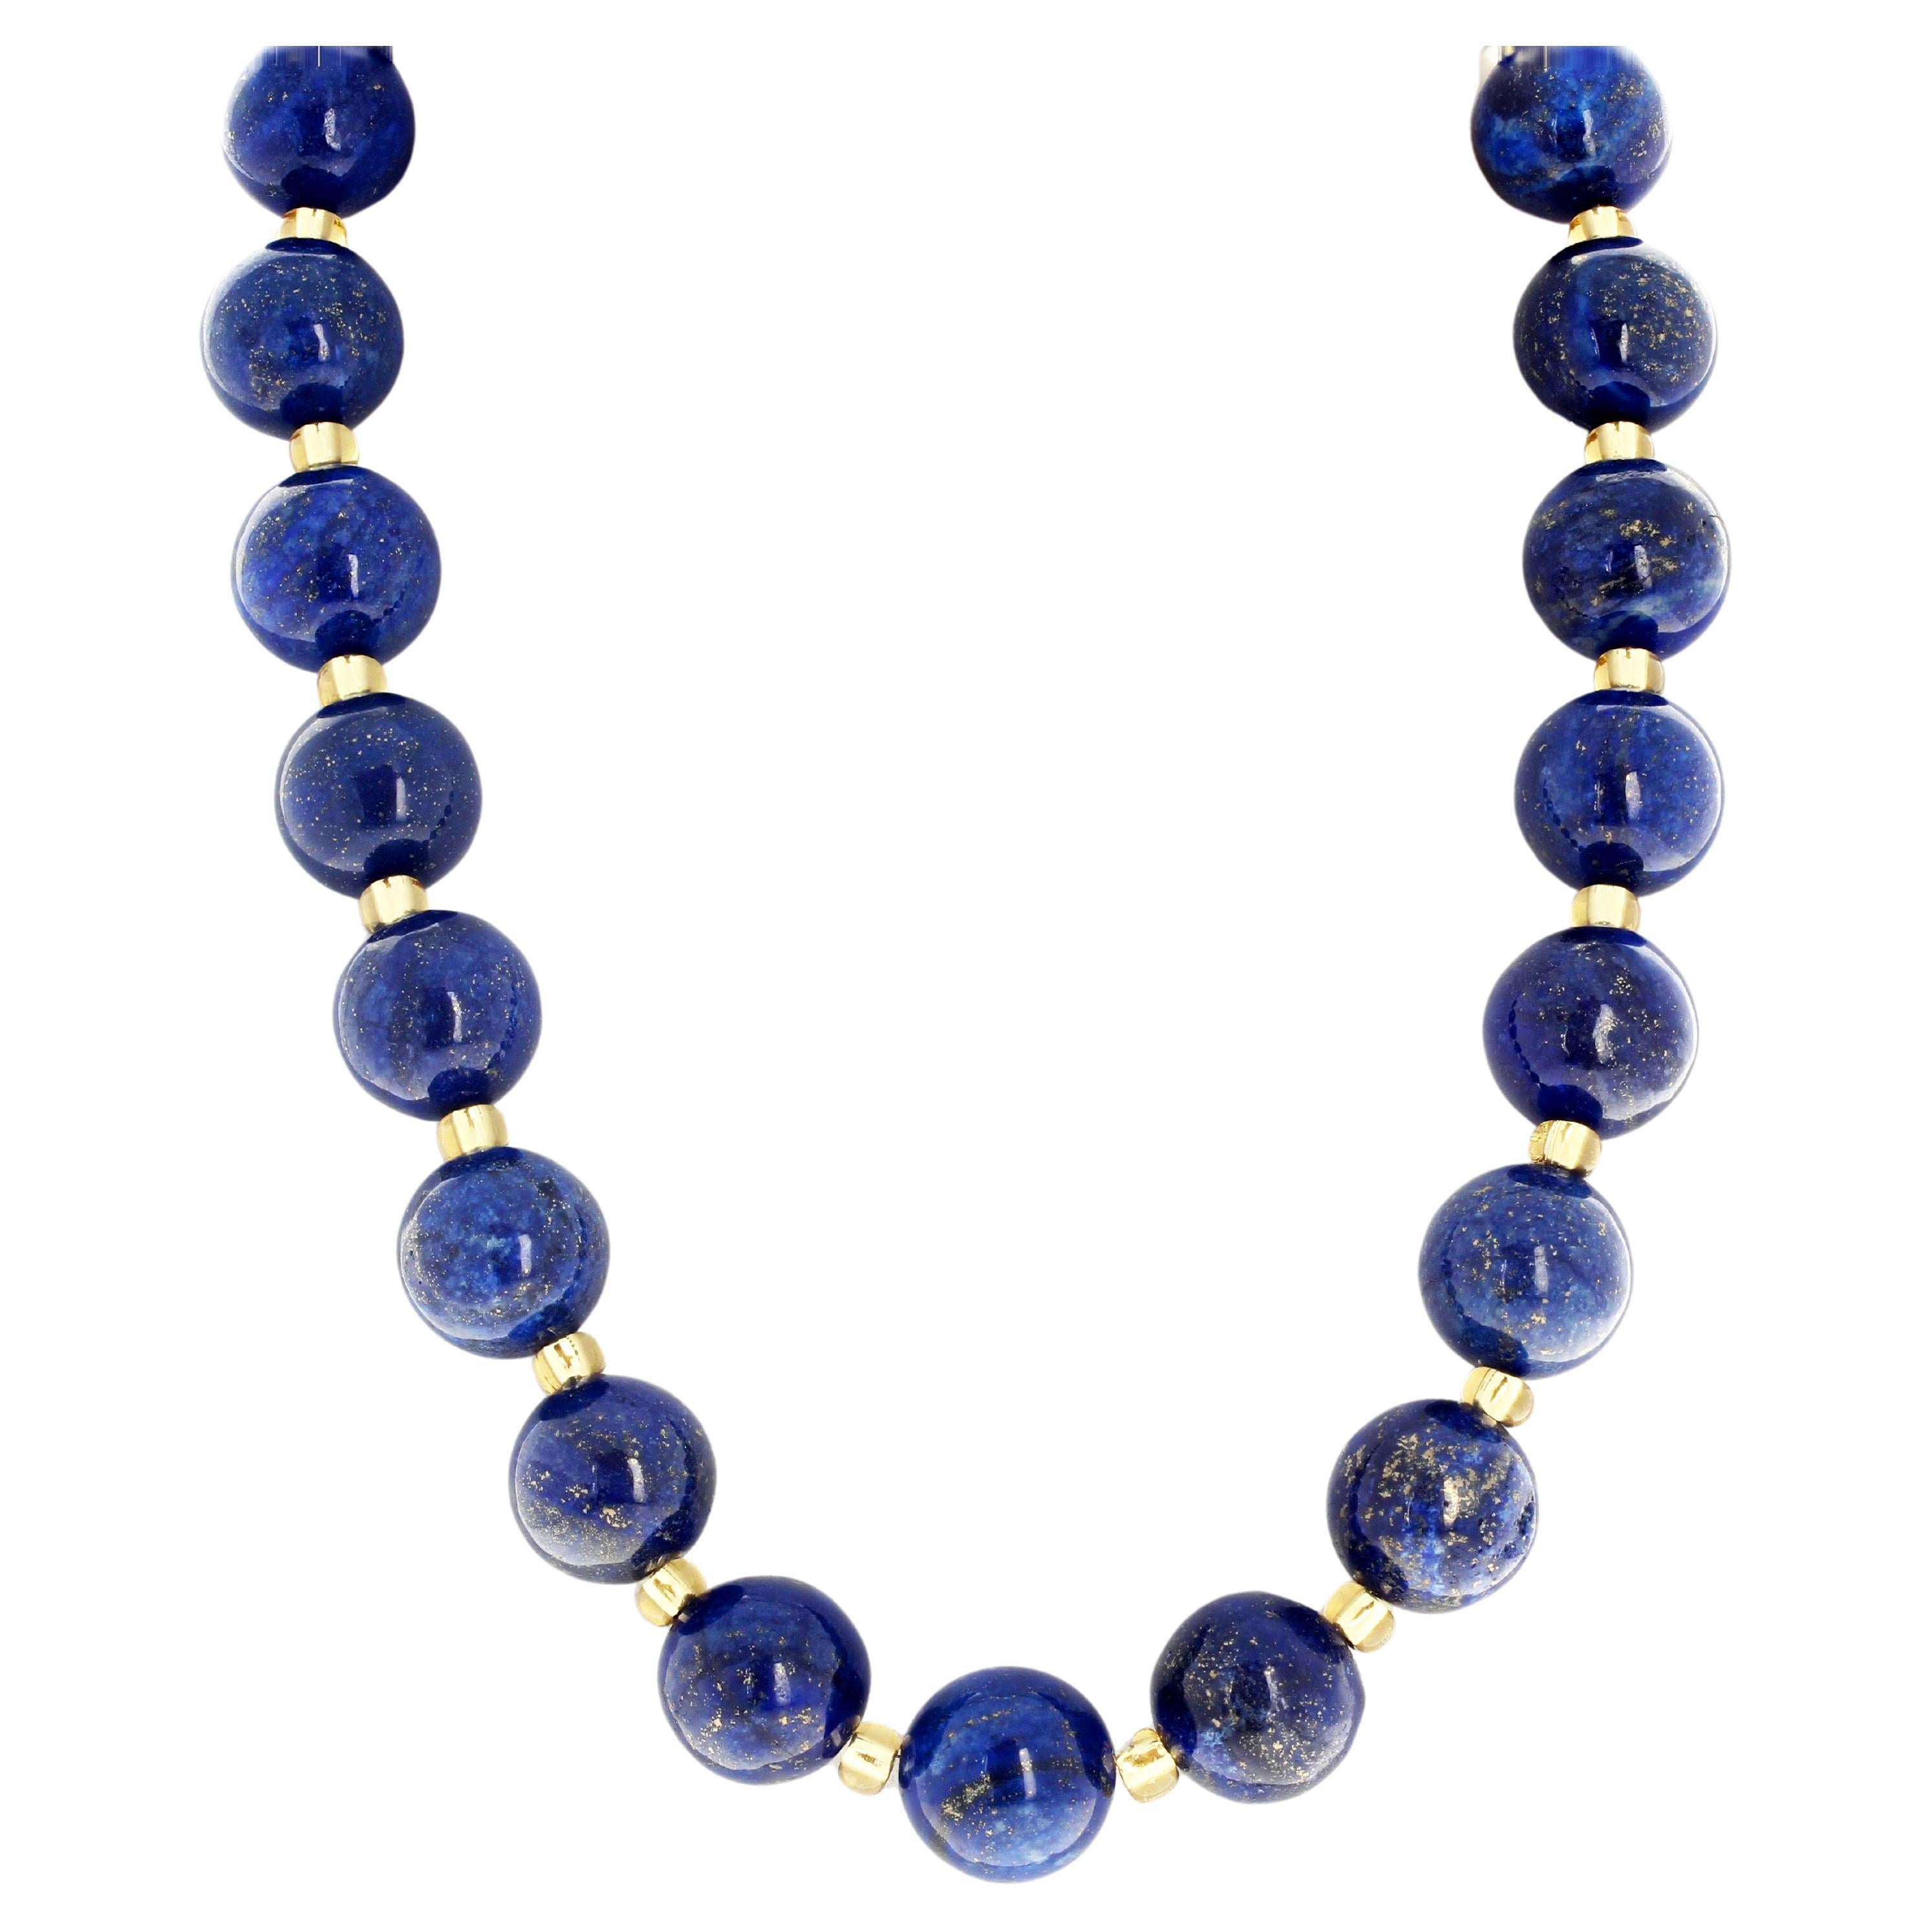 AJD Huge Lapis Lazuli Unique Handmade 19.5" Long Necklace